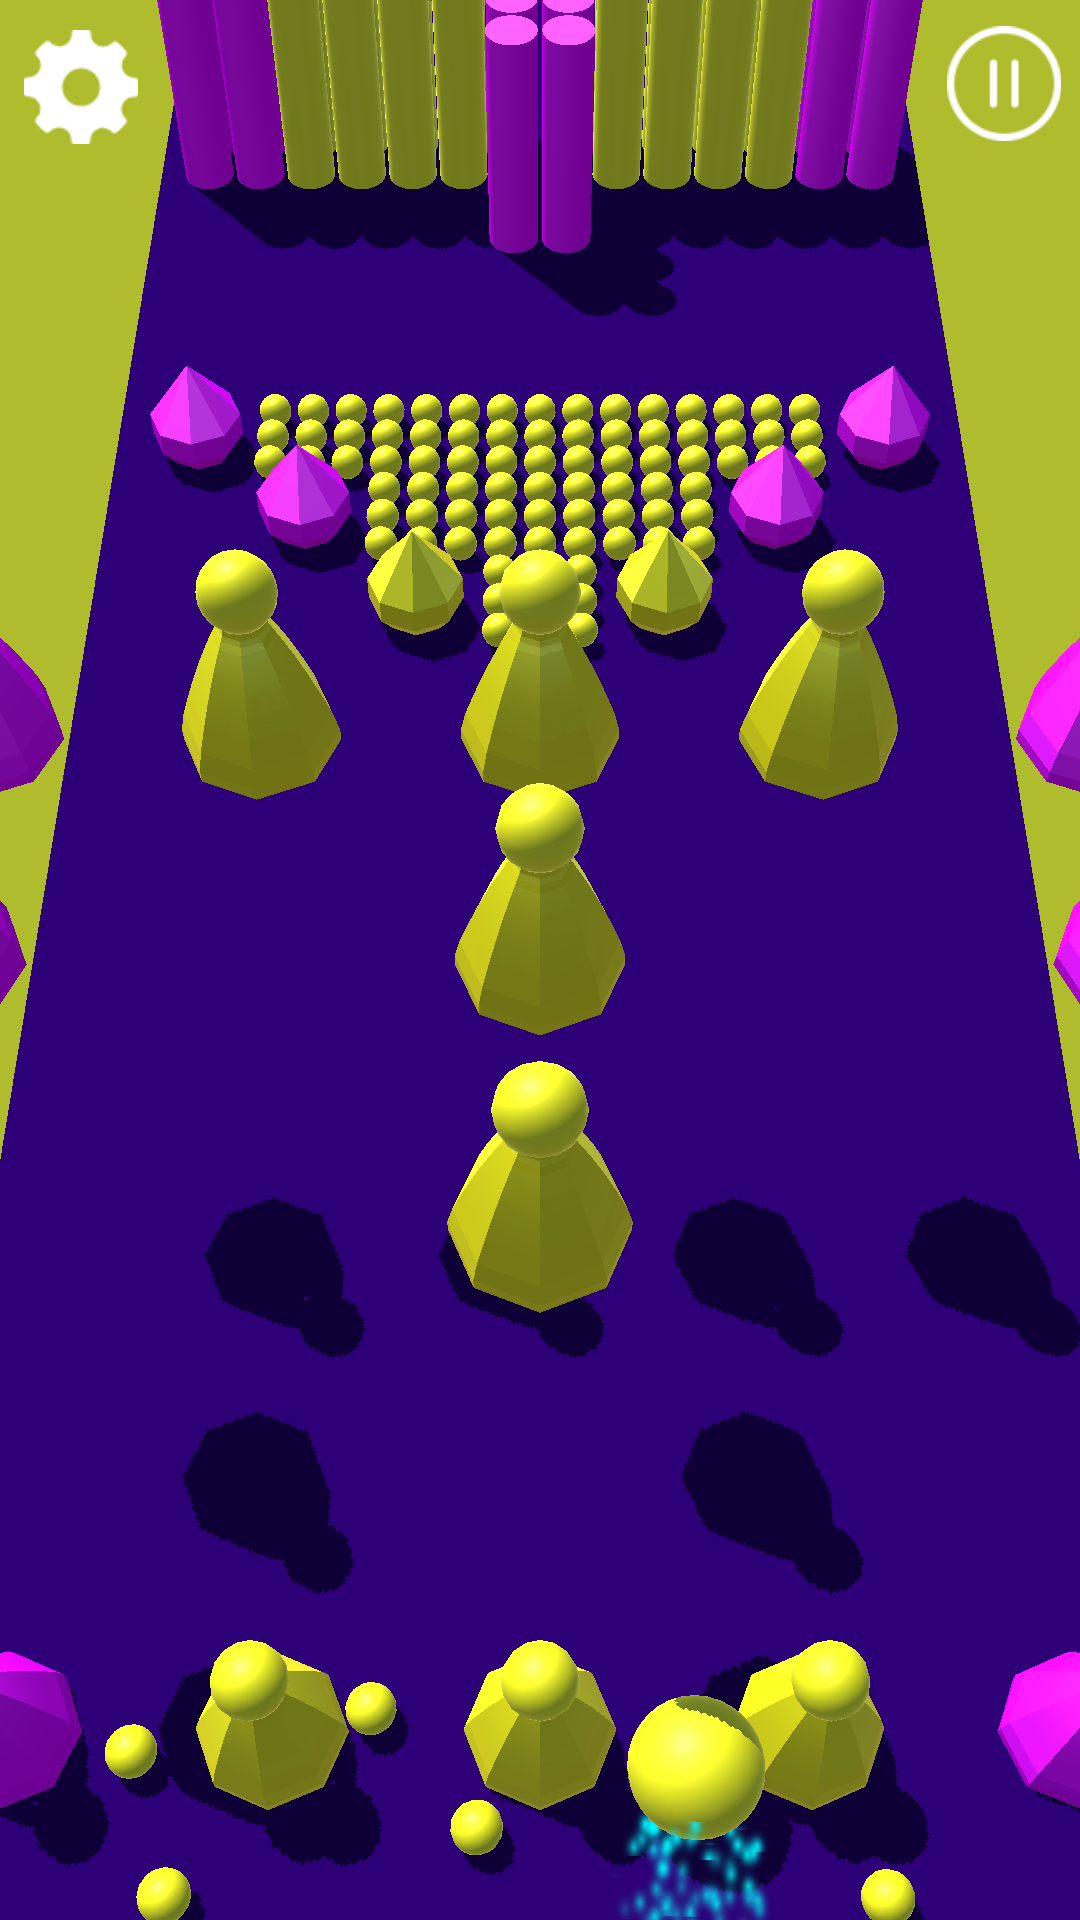 Color Dot 3D : Ball bump game screenshot game